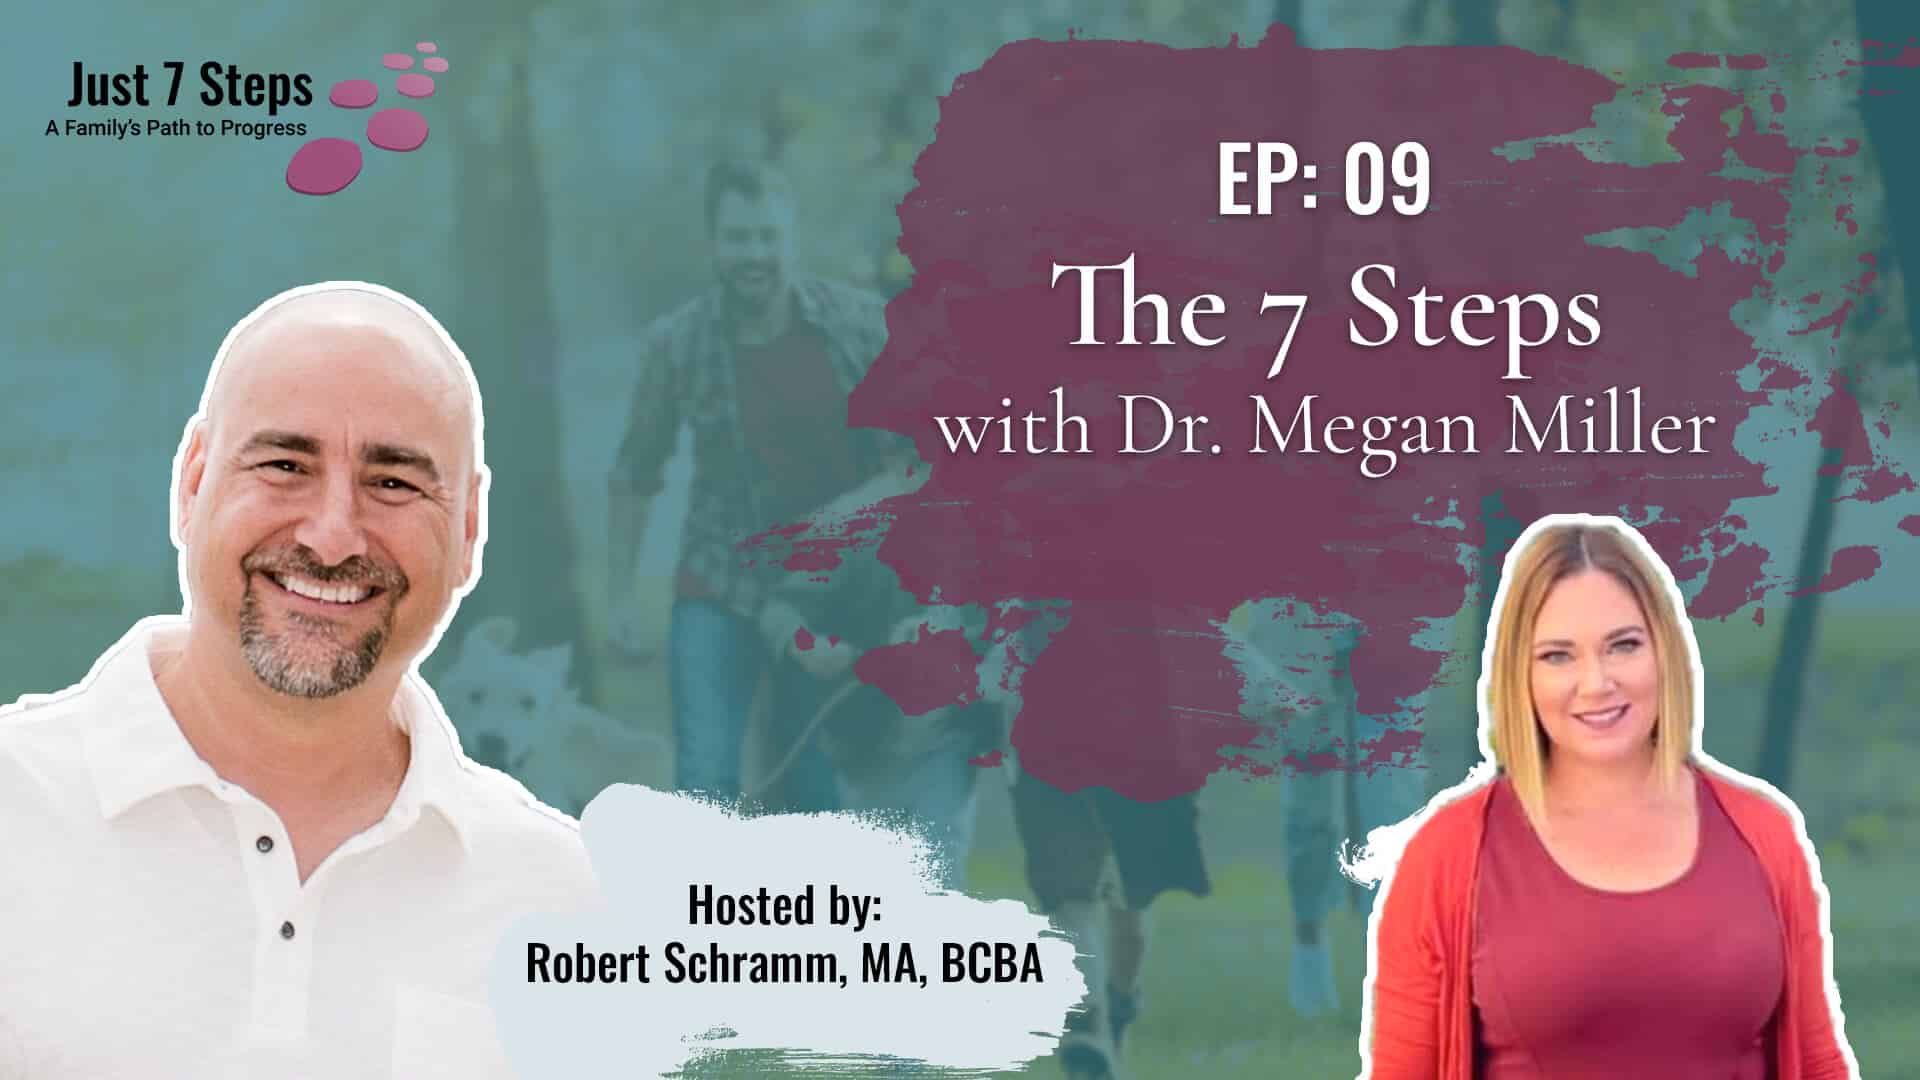 The 7 Steps with Dr. Megan Miller